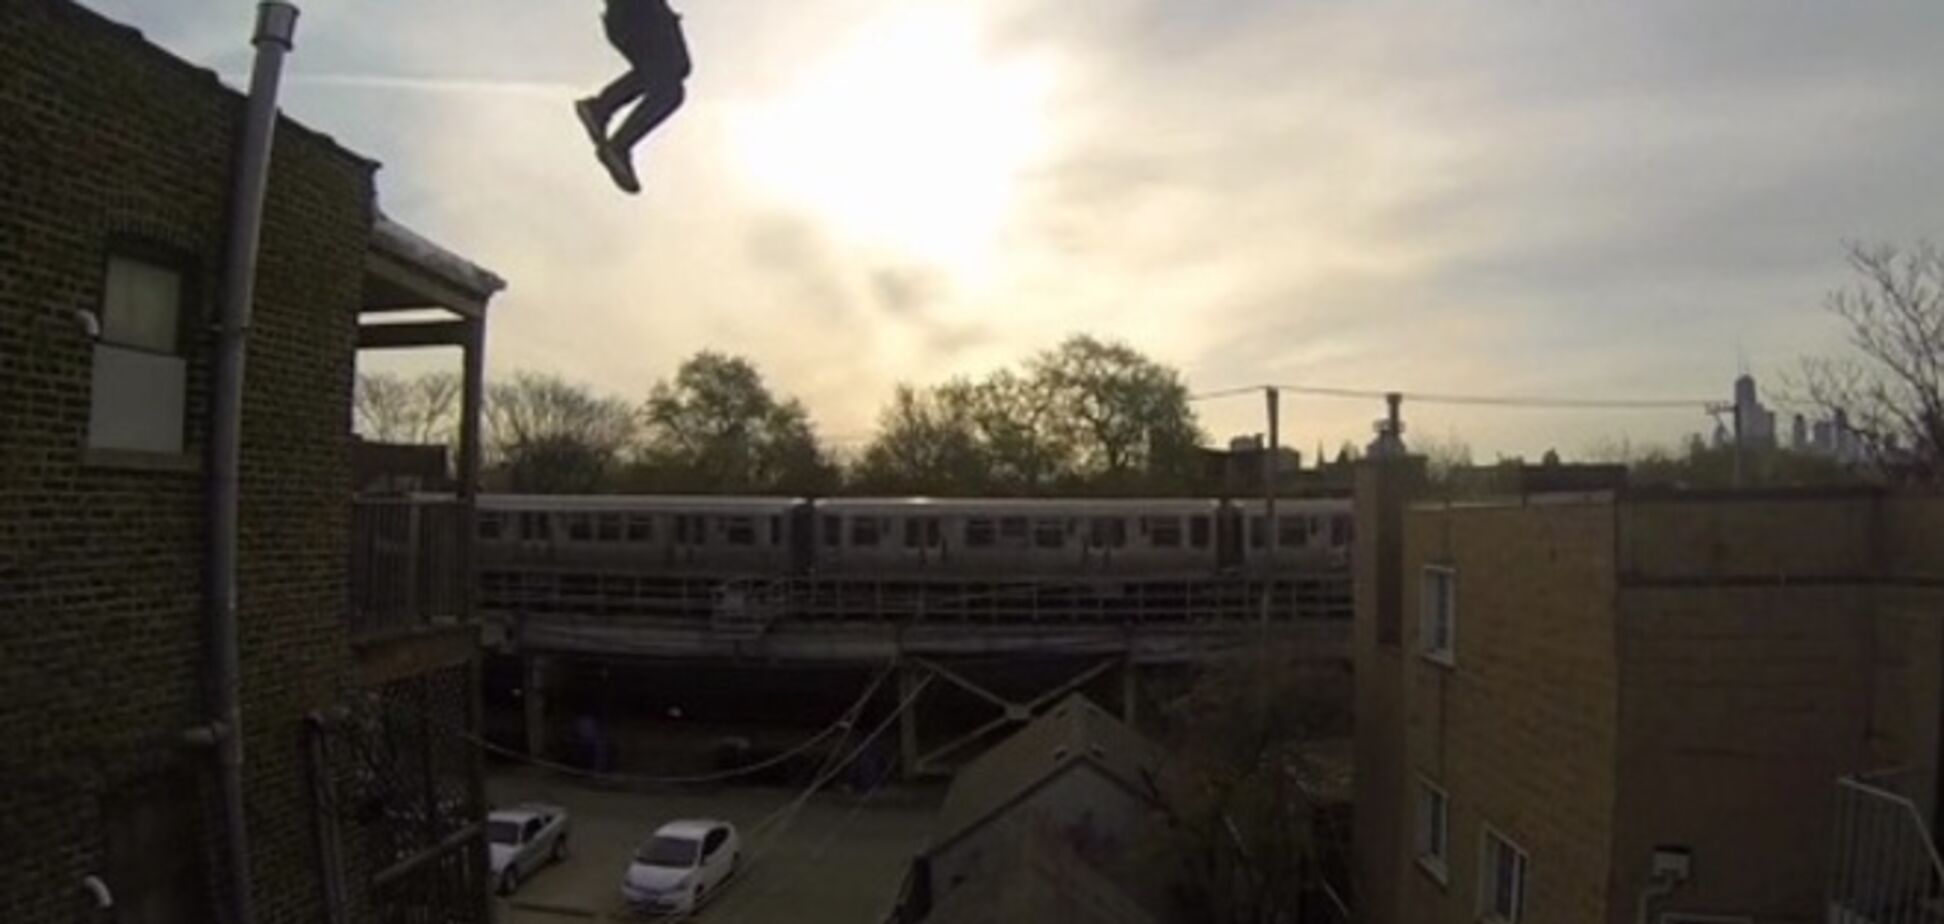 Відео стрибка жителя Чикаго з даху стало хітом на Youtube